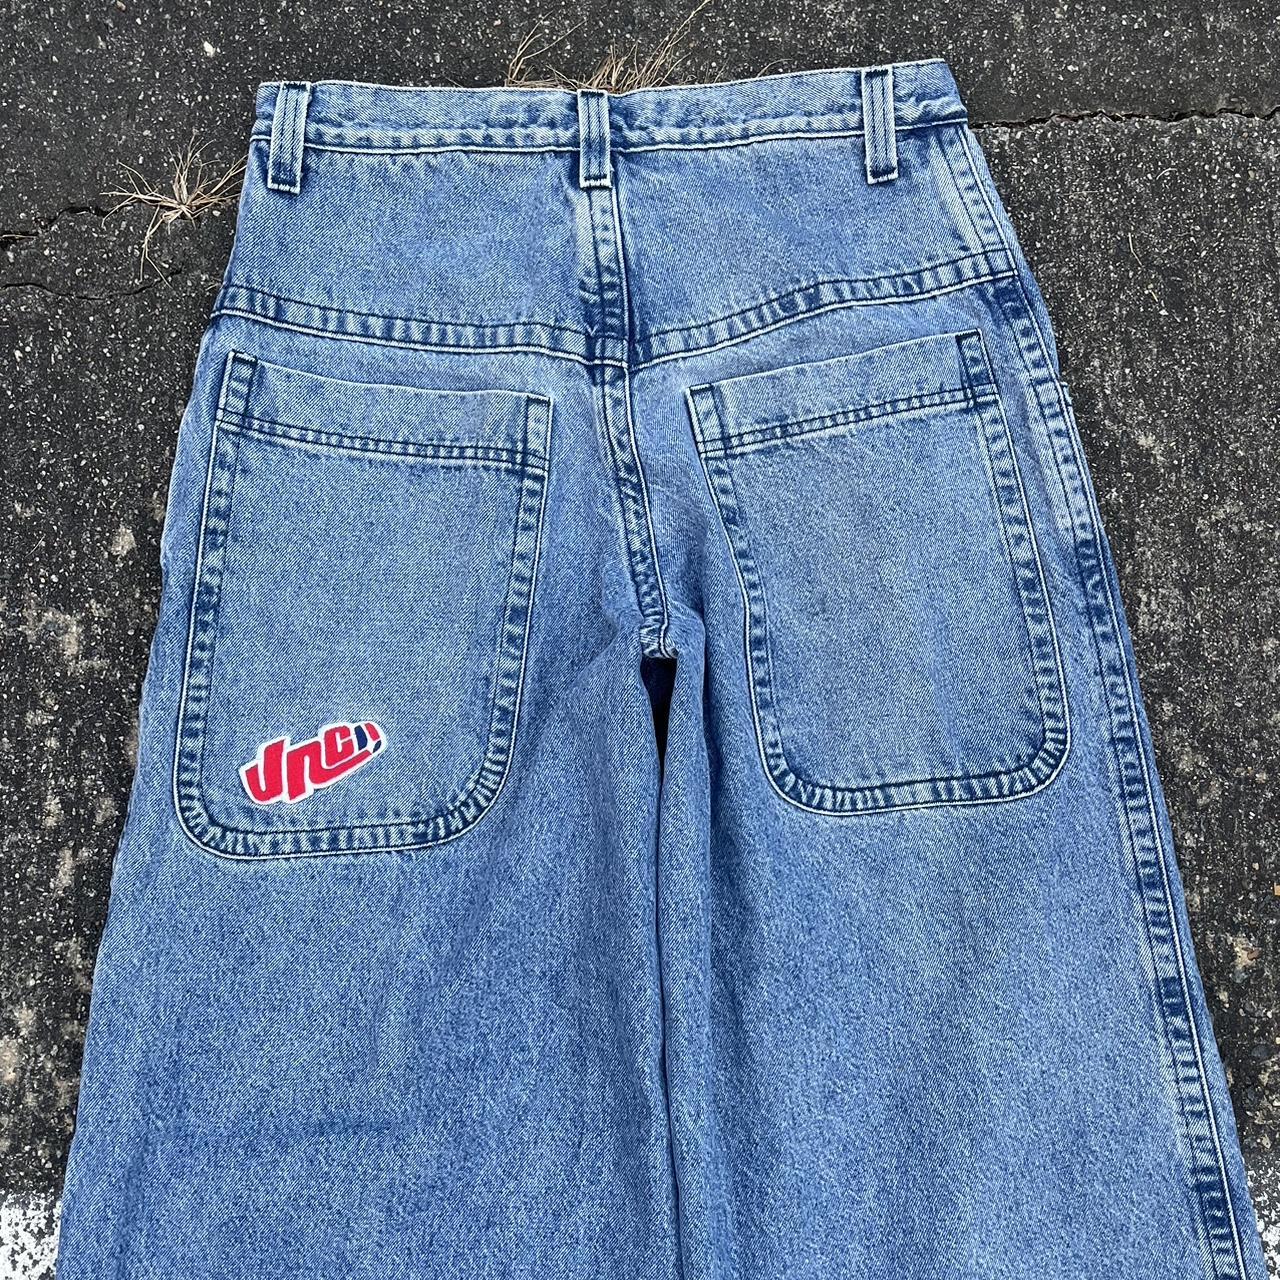 Super Rare Jnco Jeans Made In Usa Original 90S Jnco... - Depop